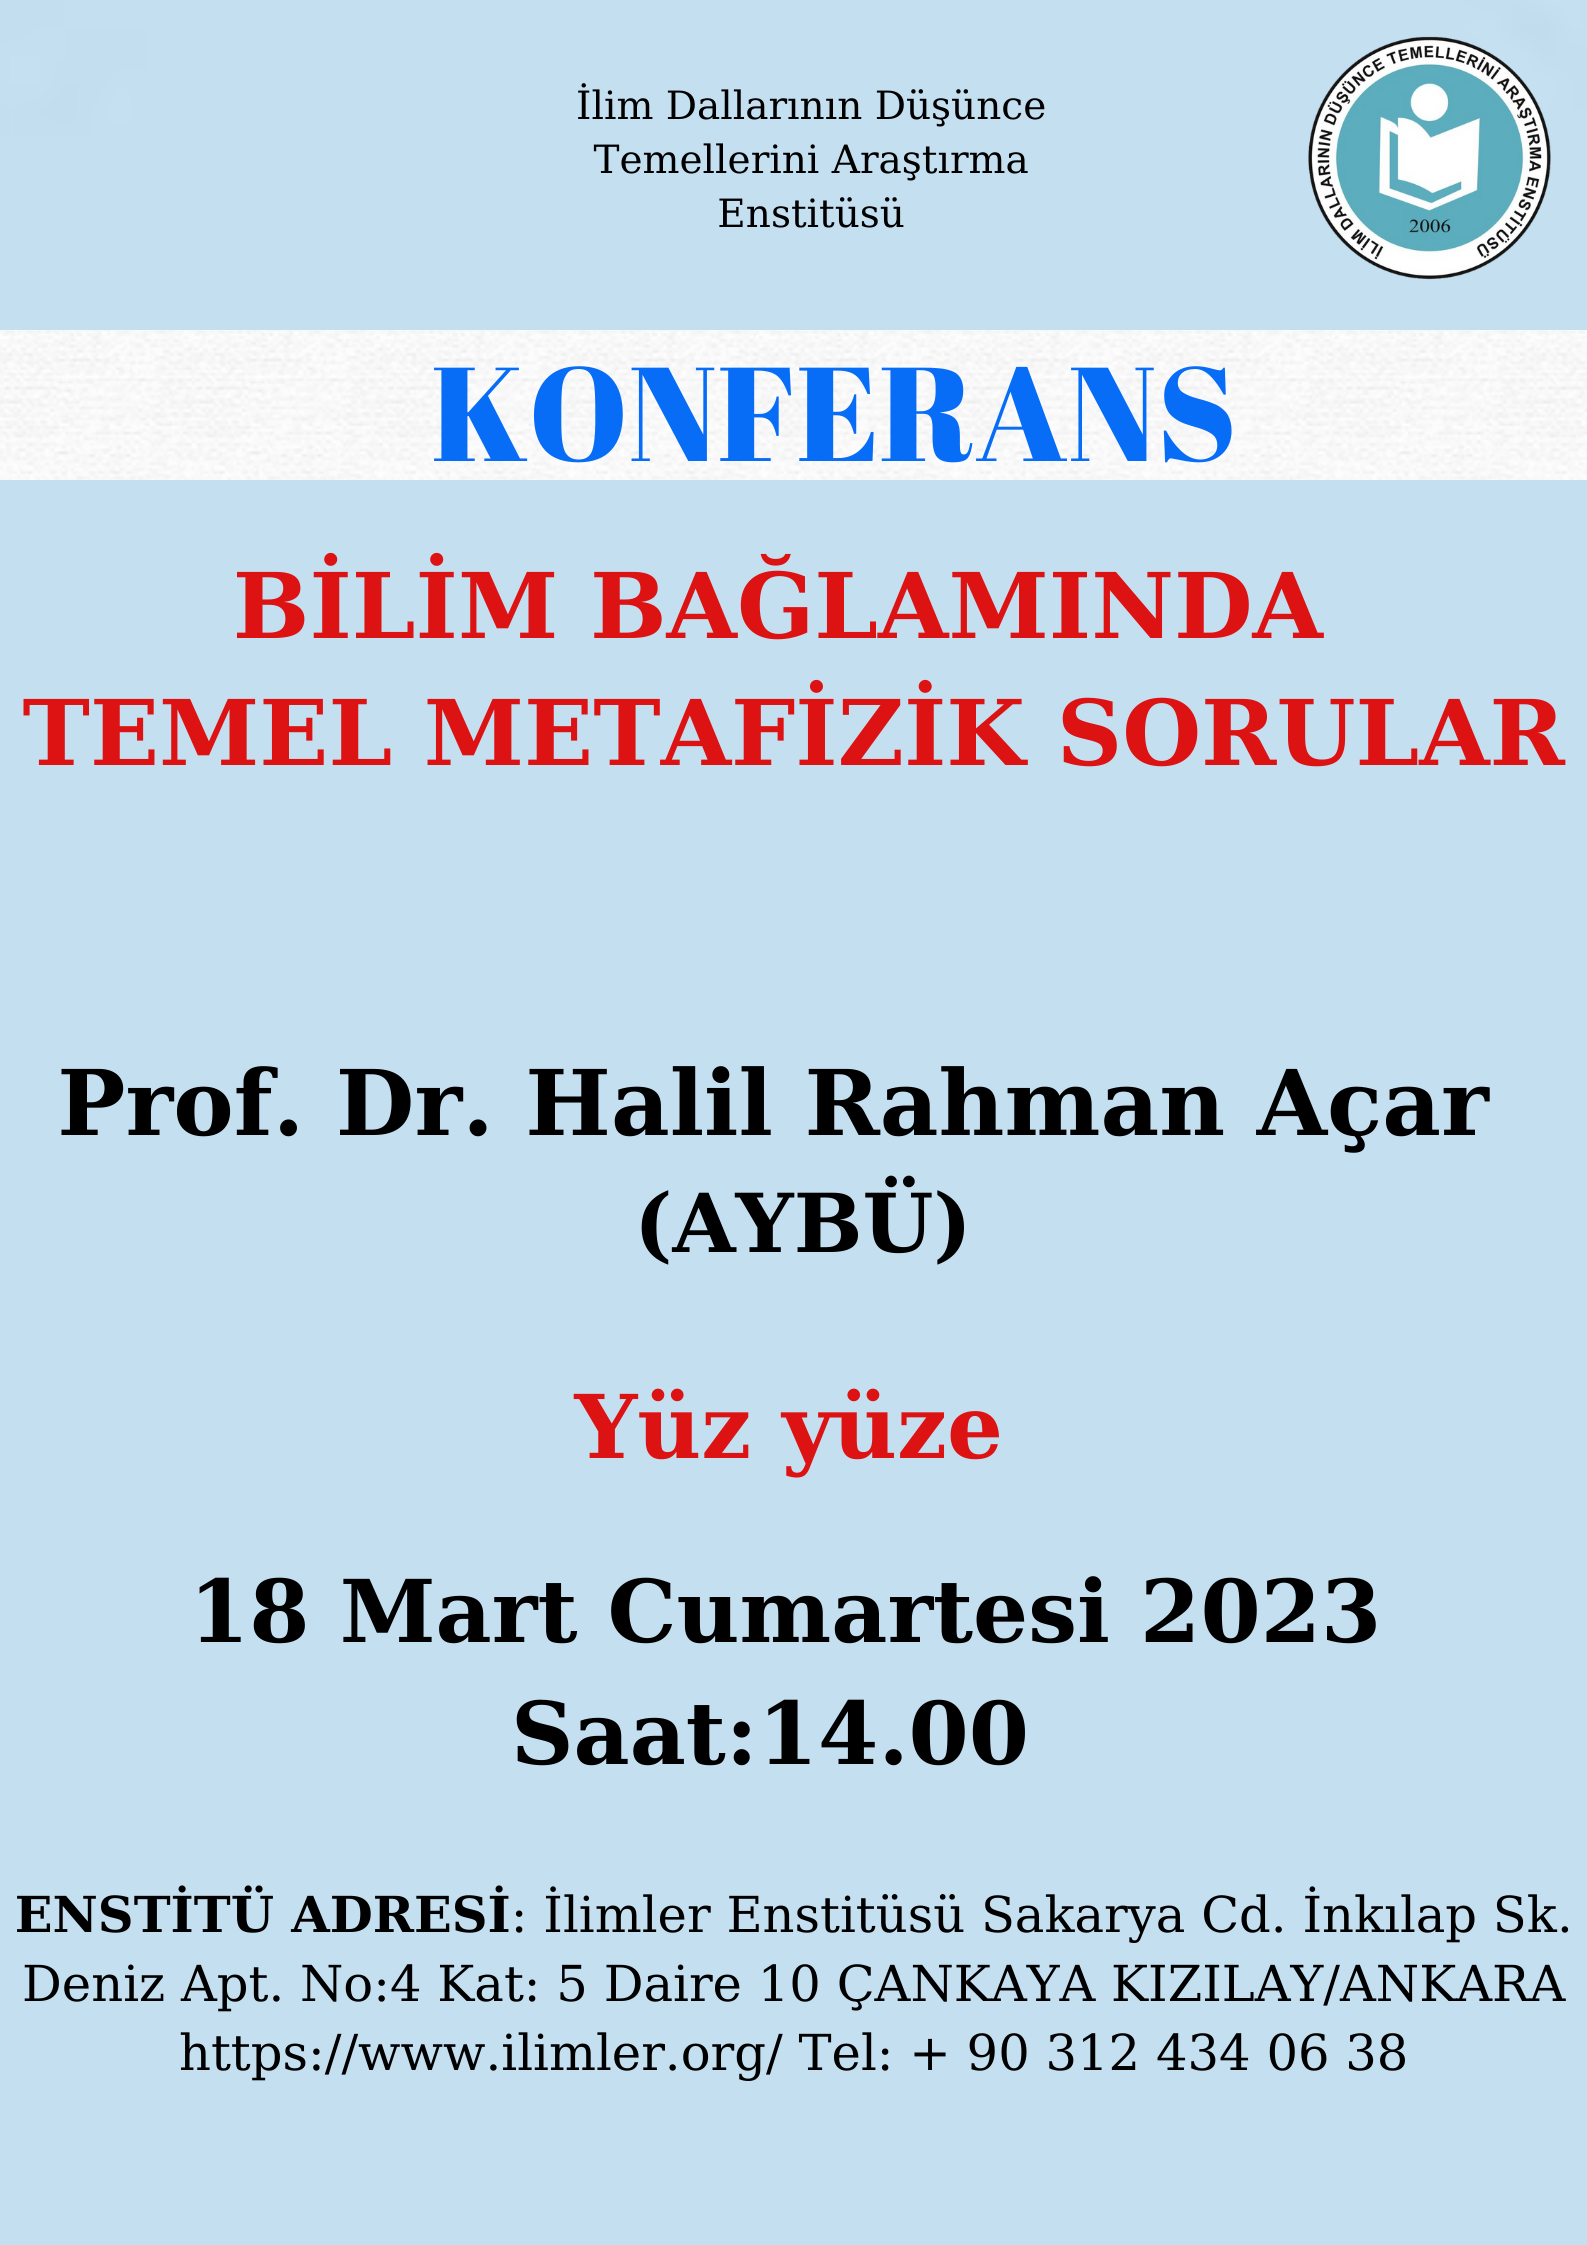 Bilim Bağlamında Temel Metafizik Sorular -Prof. Dr. Halil Rahman Açar- 18.03.2023